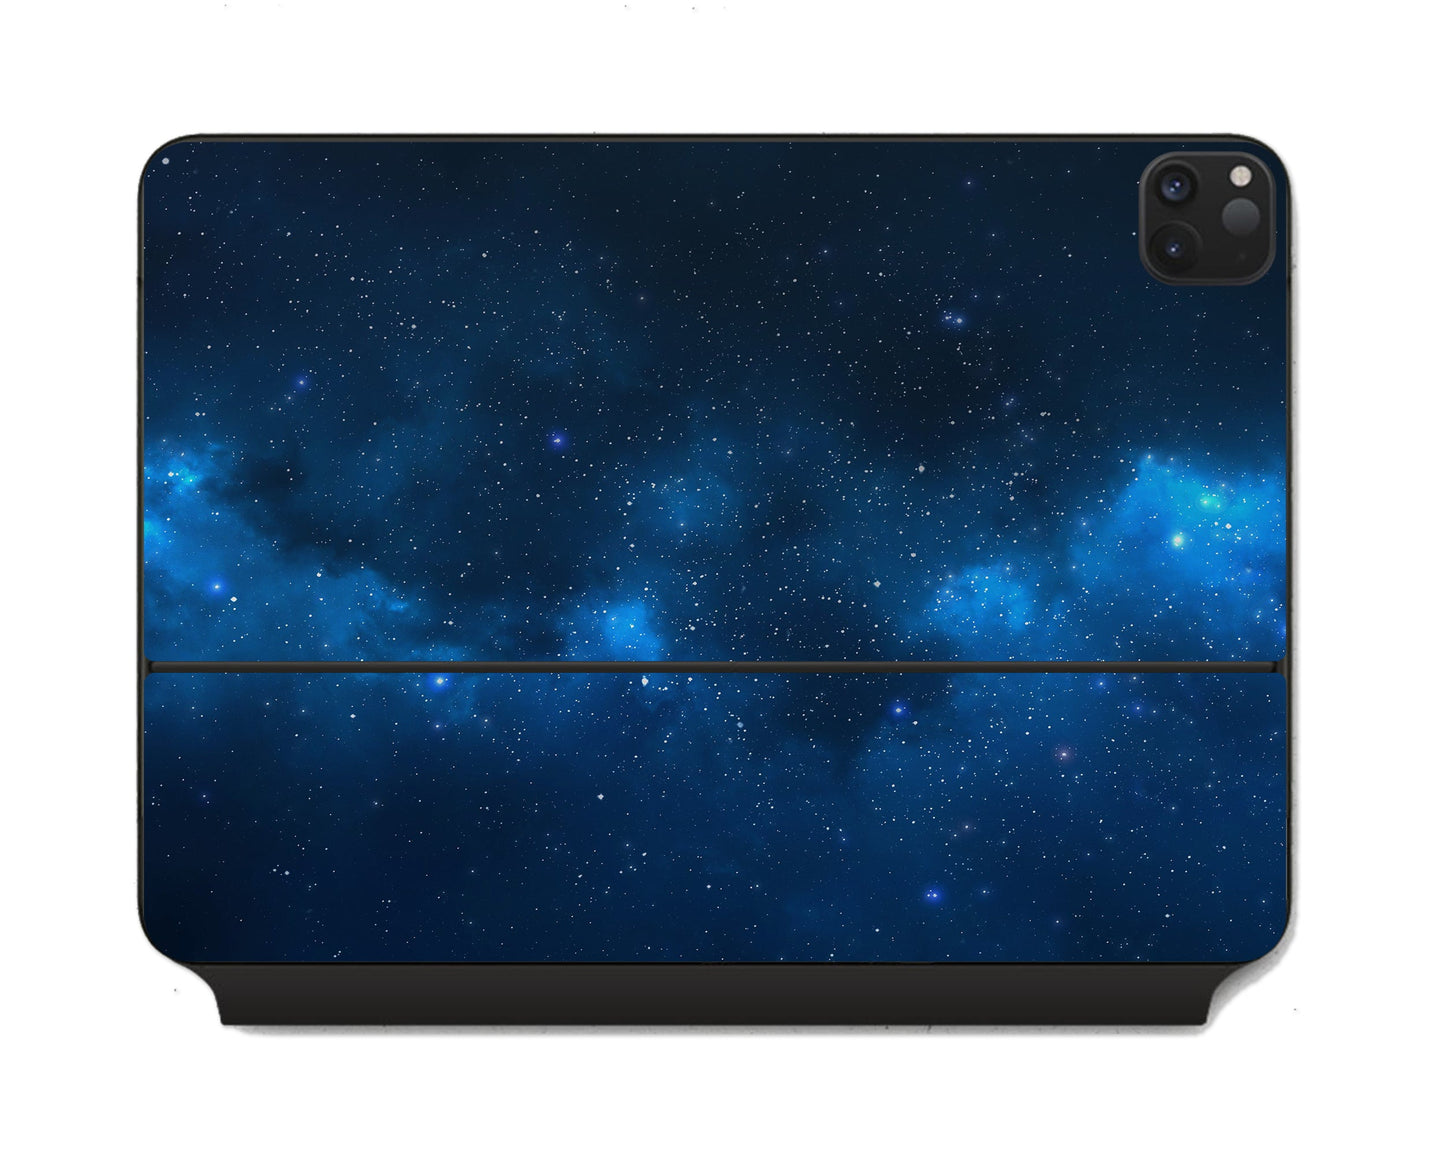 Lux Skins Magic Keyboard Blue Stardust Galaxy iPad Pro 11" Skins - Galaxy Artwork Skin